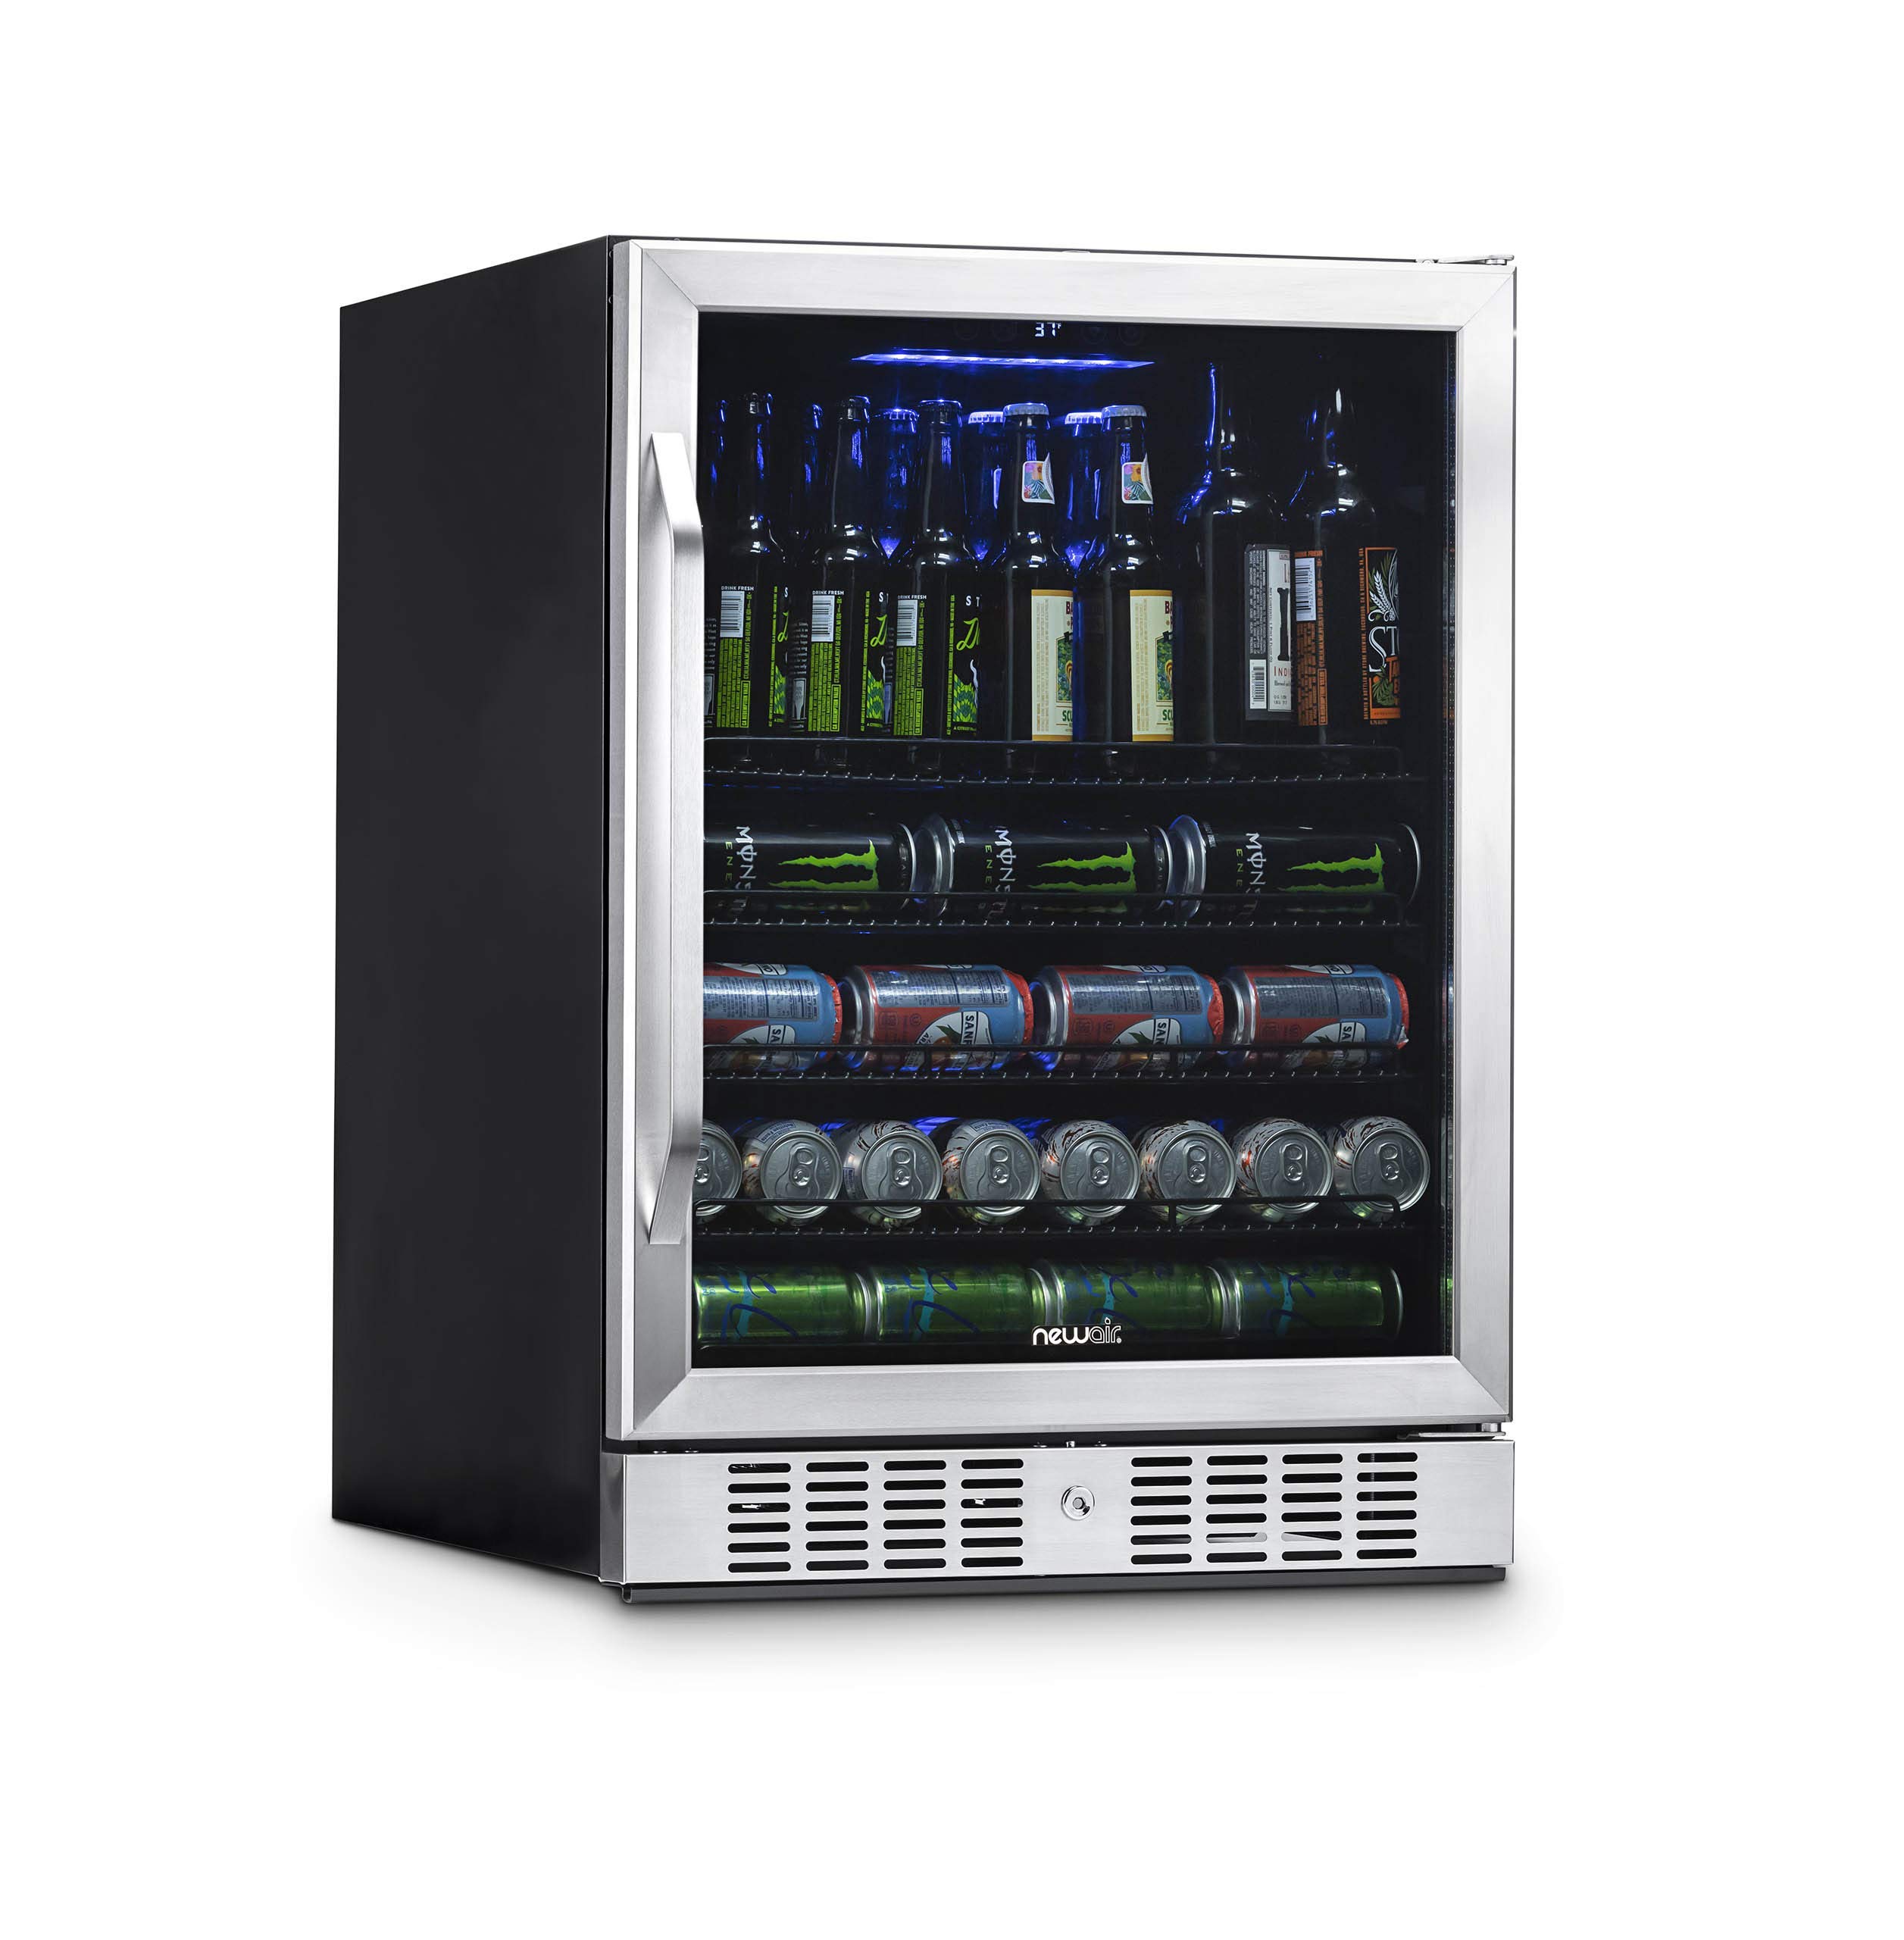 NewAir 大型饮料冰箱冷藏箱，容量 177 罐 - 迷你酒吧啤酒冰箱，带可逆铰链玻璃门和底部钥匙锁 - 冷...